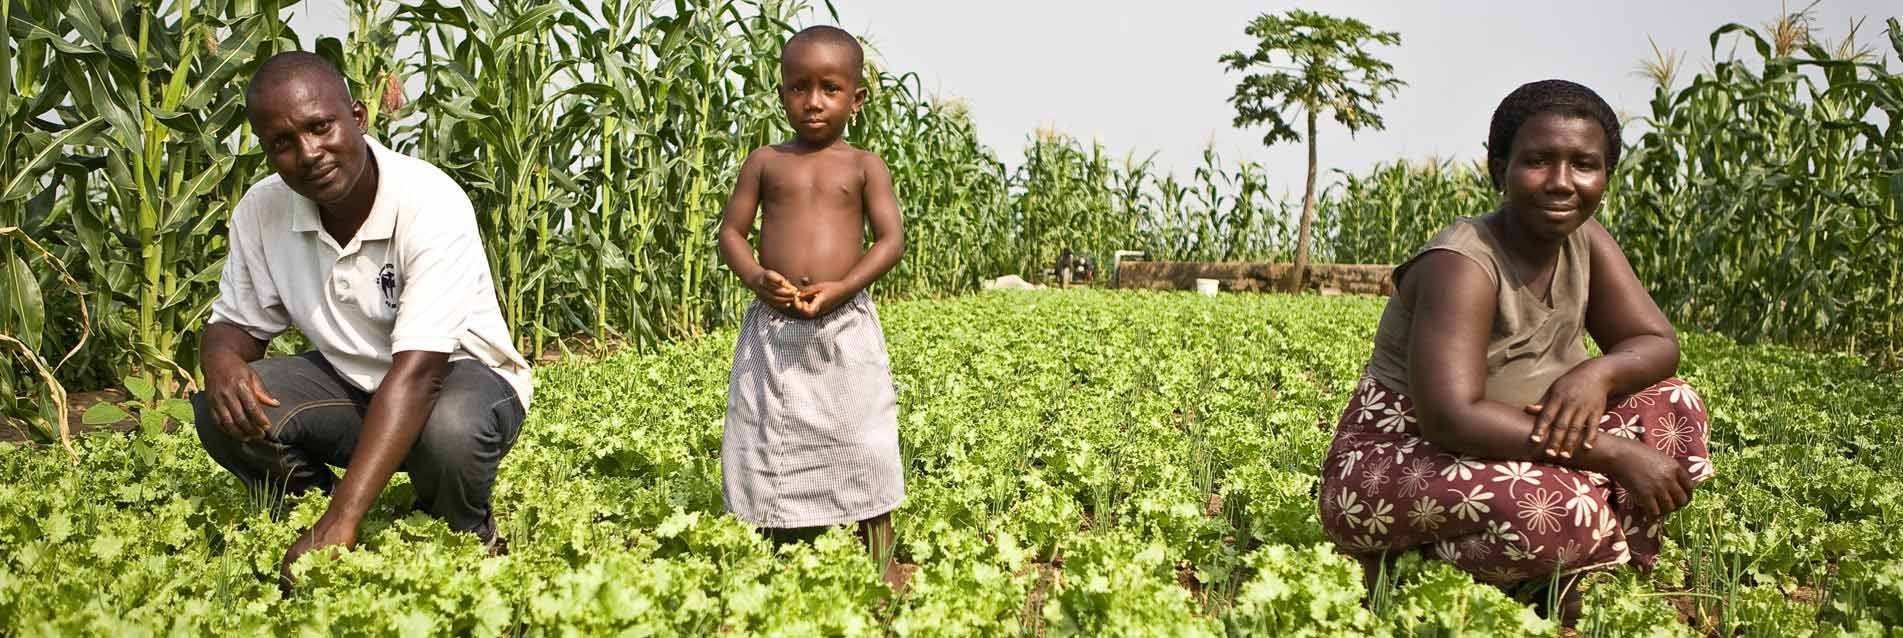 Promotion de l’agriculture familiale en Afrique de l’Ouest : aller vers la consommation massive de produits locaux